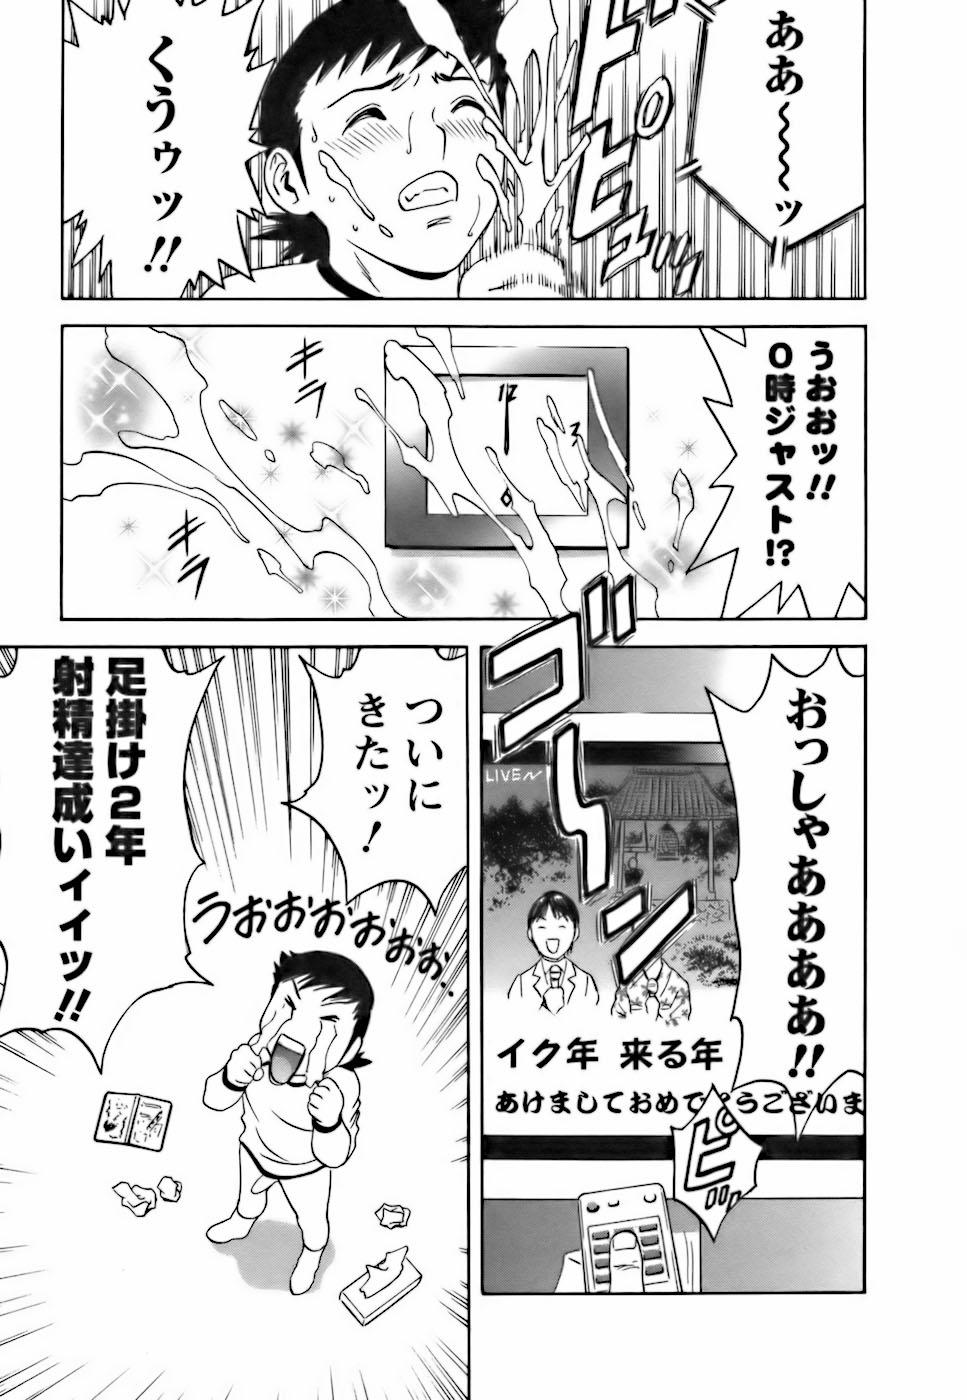 [Hidemaru] Mo-Retsu! Boin Sensei (Boing Boing Teacher) Vol.3 150